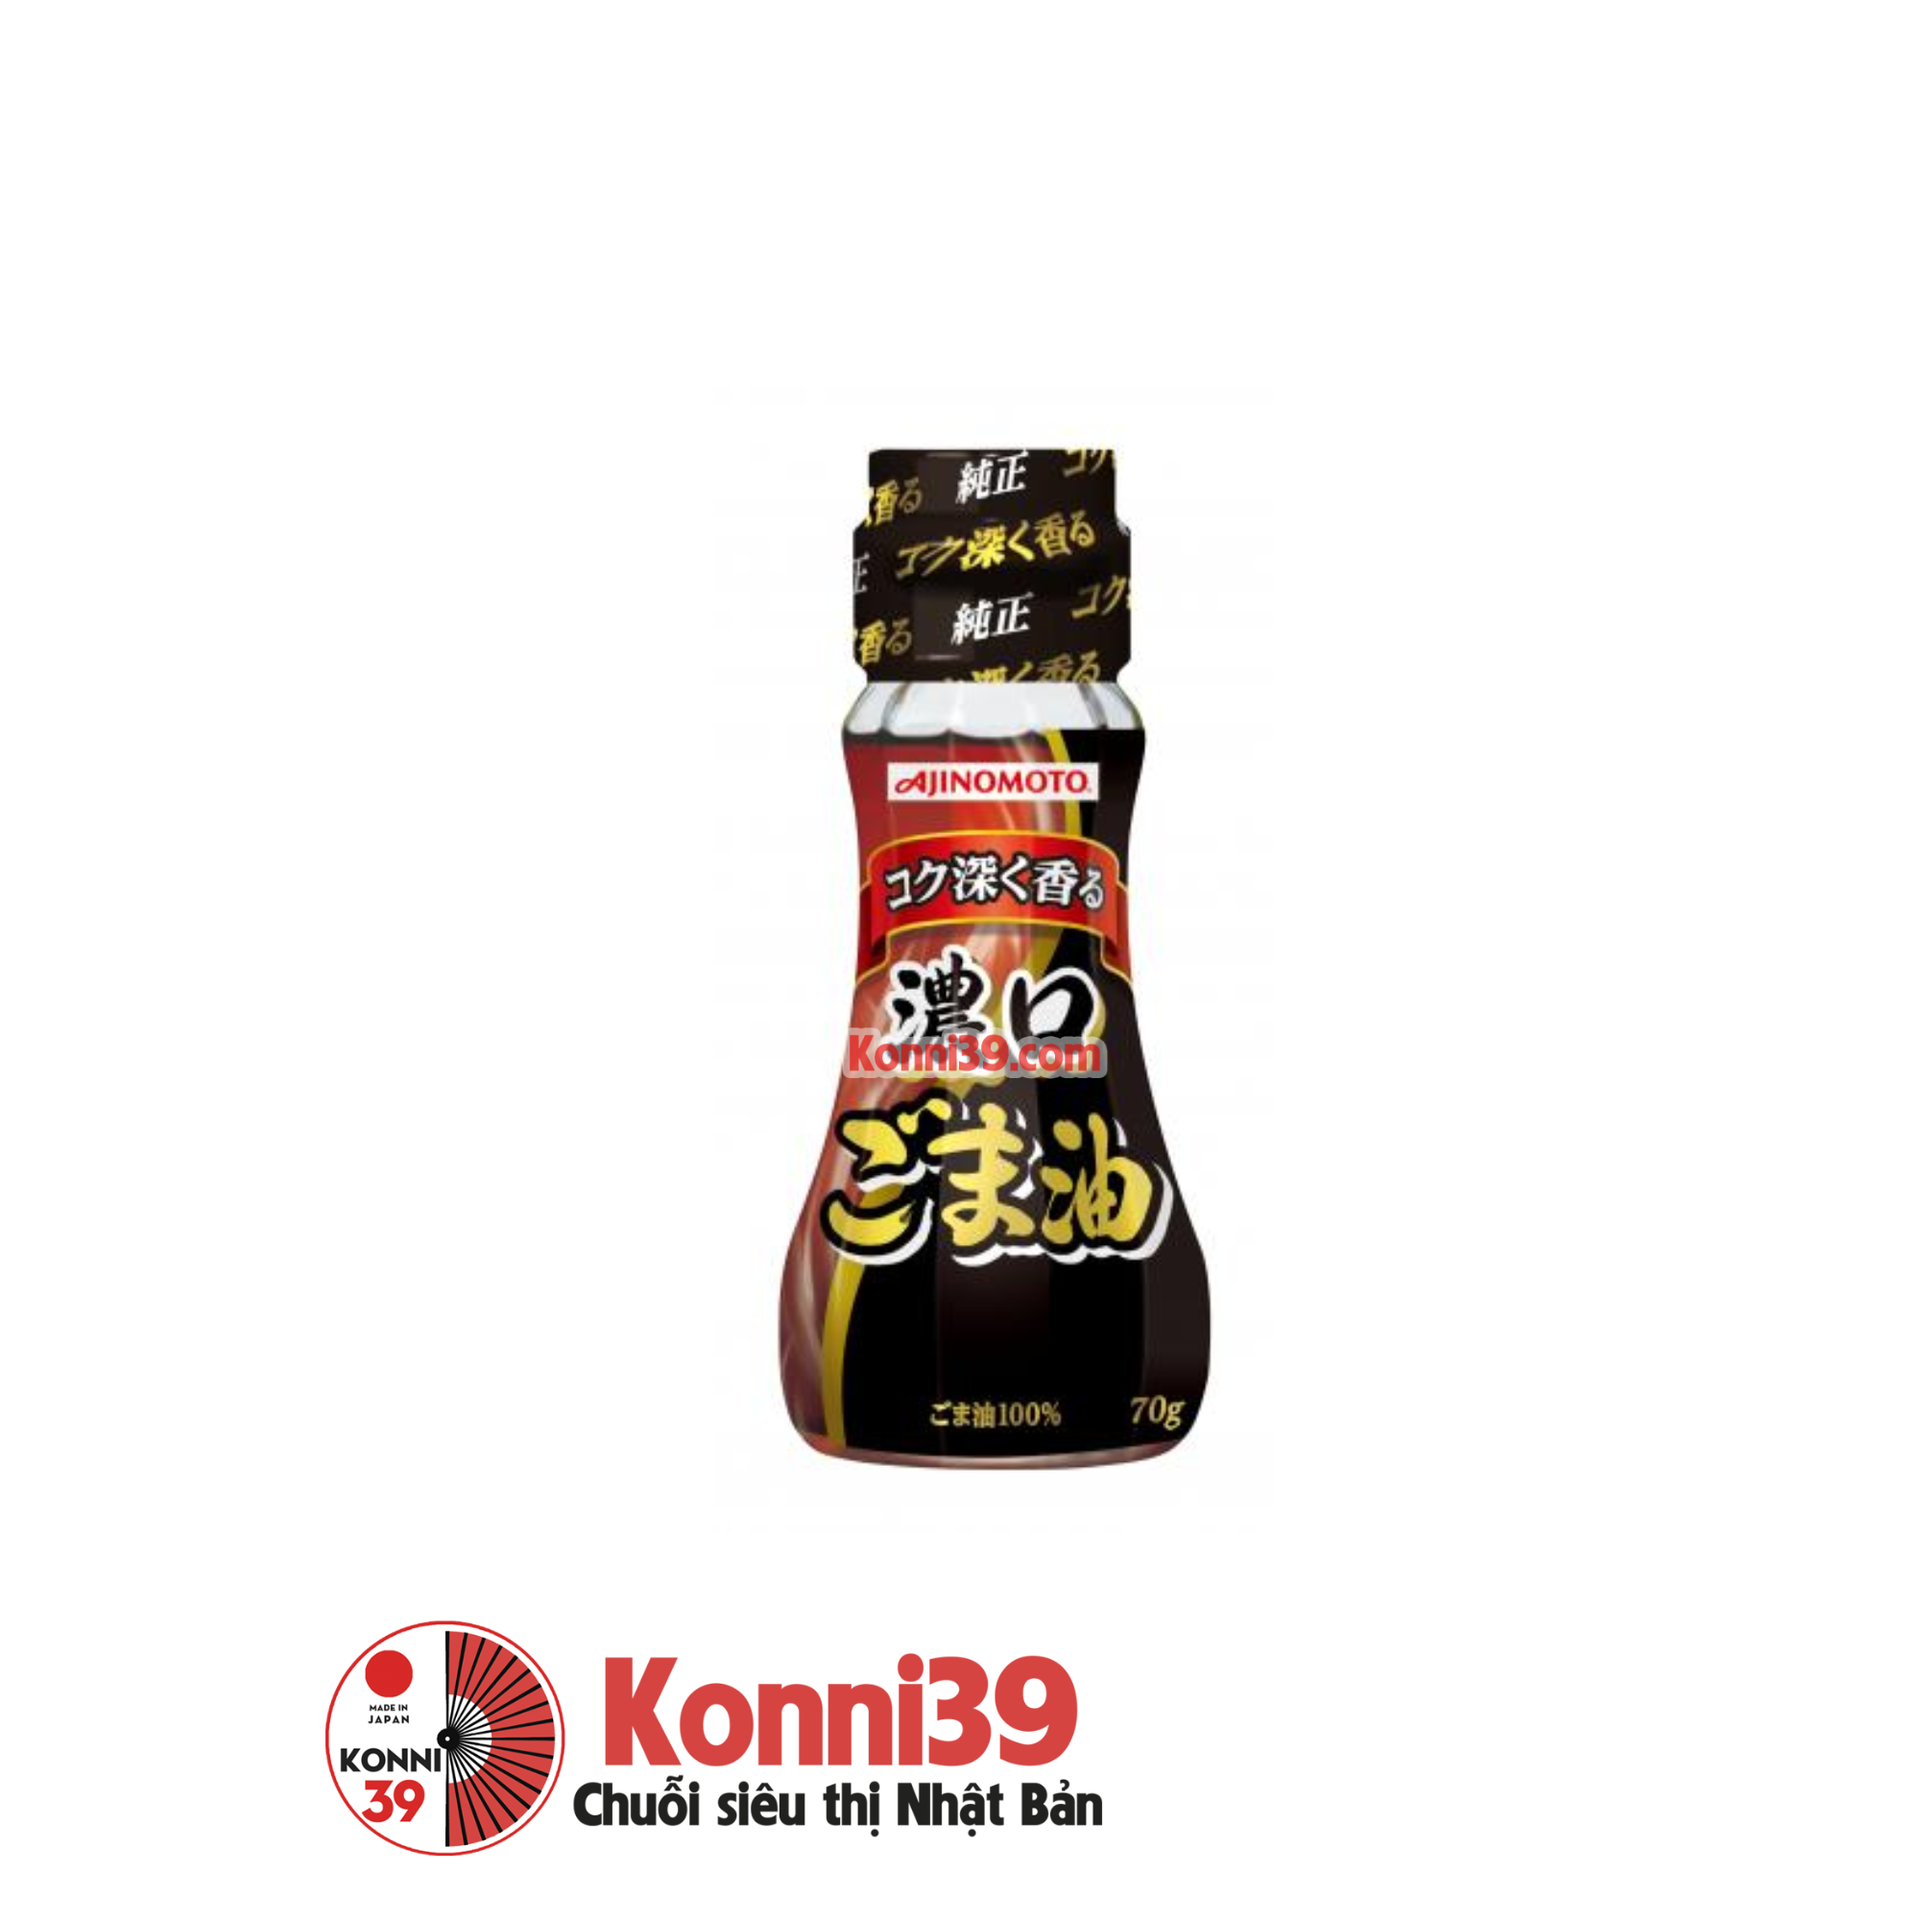 Dầu mè đen Ajinomoto nguyên chất chai 70g - Chuỗi siêu thị Nhật Bản nội địa  - Made in Japan Konni39 tại Việt Nam